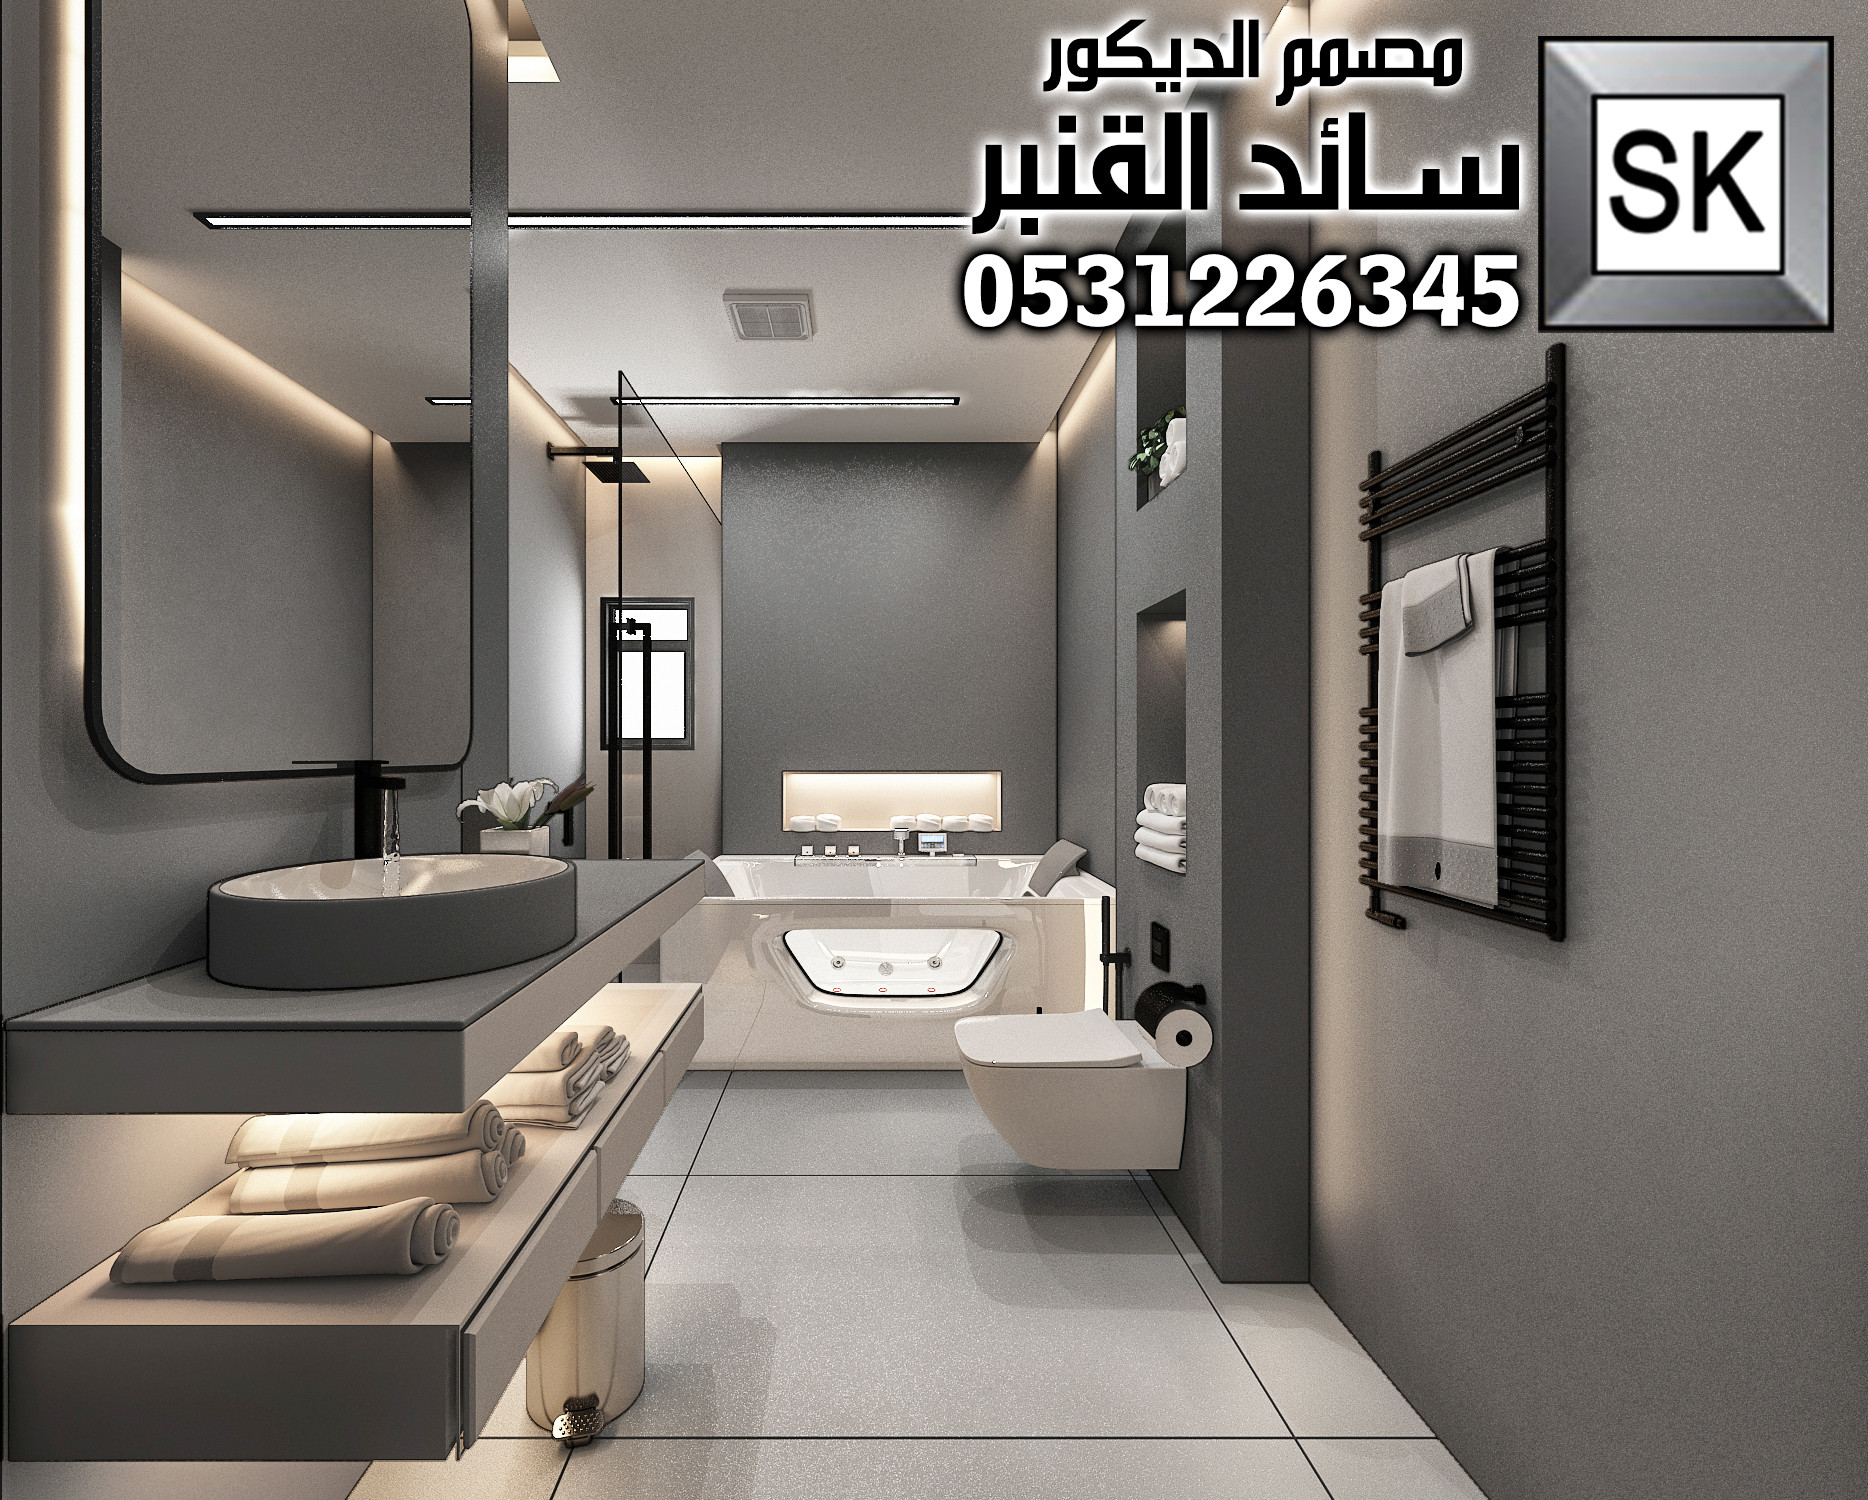 تصميم و تنفيذ حمامات و مغاسل في الرياض